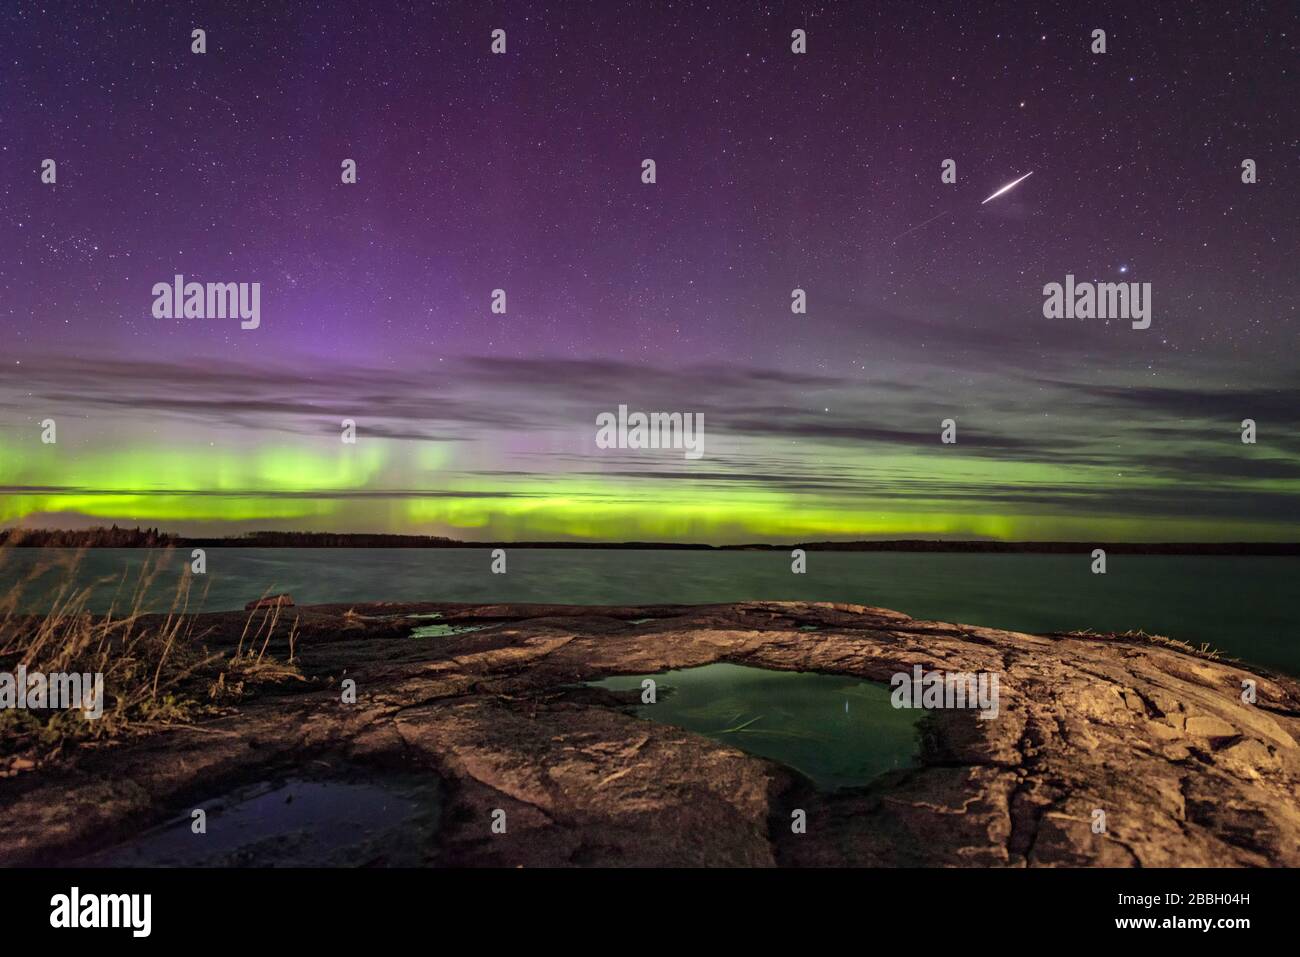 Aurora tanzt und ein Meteor streift über den See in Manitoba Kanada großer Felsbrocken in der eastman Region mit Lcouds, die einem schönen Himmel Textur verleihen Stockfoto